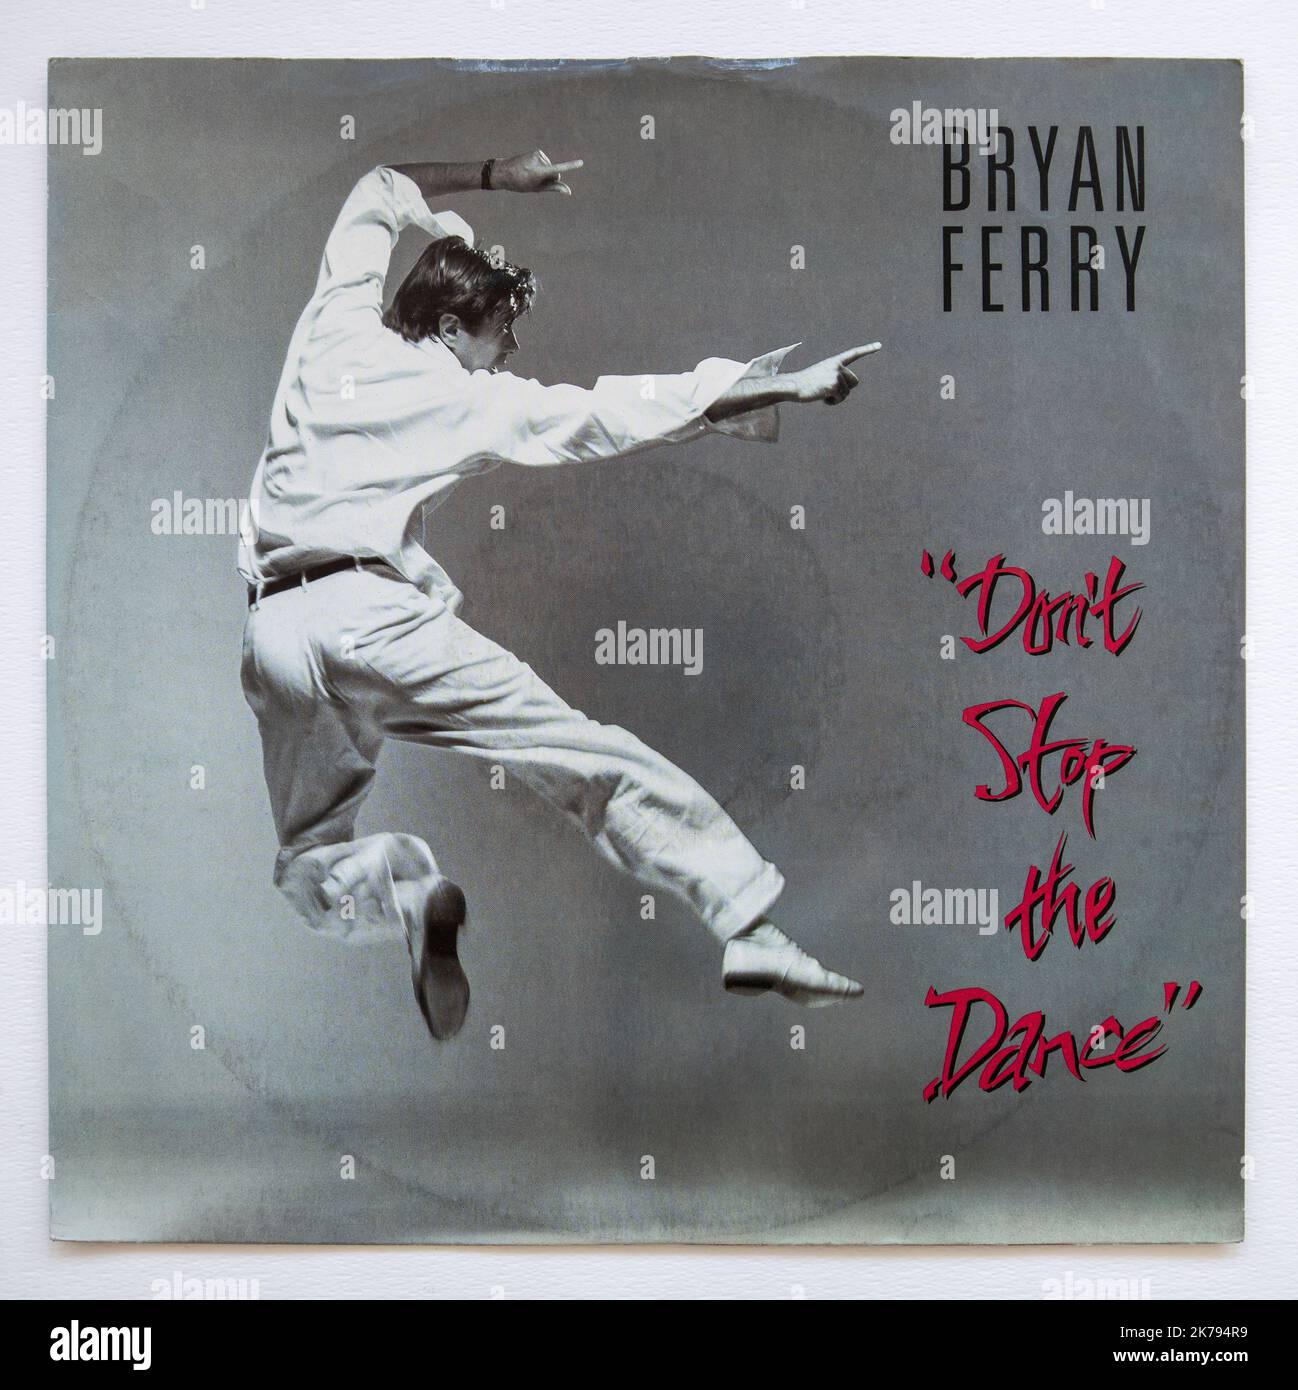 Imagen de la versión de 12 pulgadas de Don't Stop the Dance de Bryan Ferry, que fue lanzado en 1985 Foto de stock